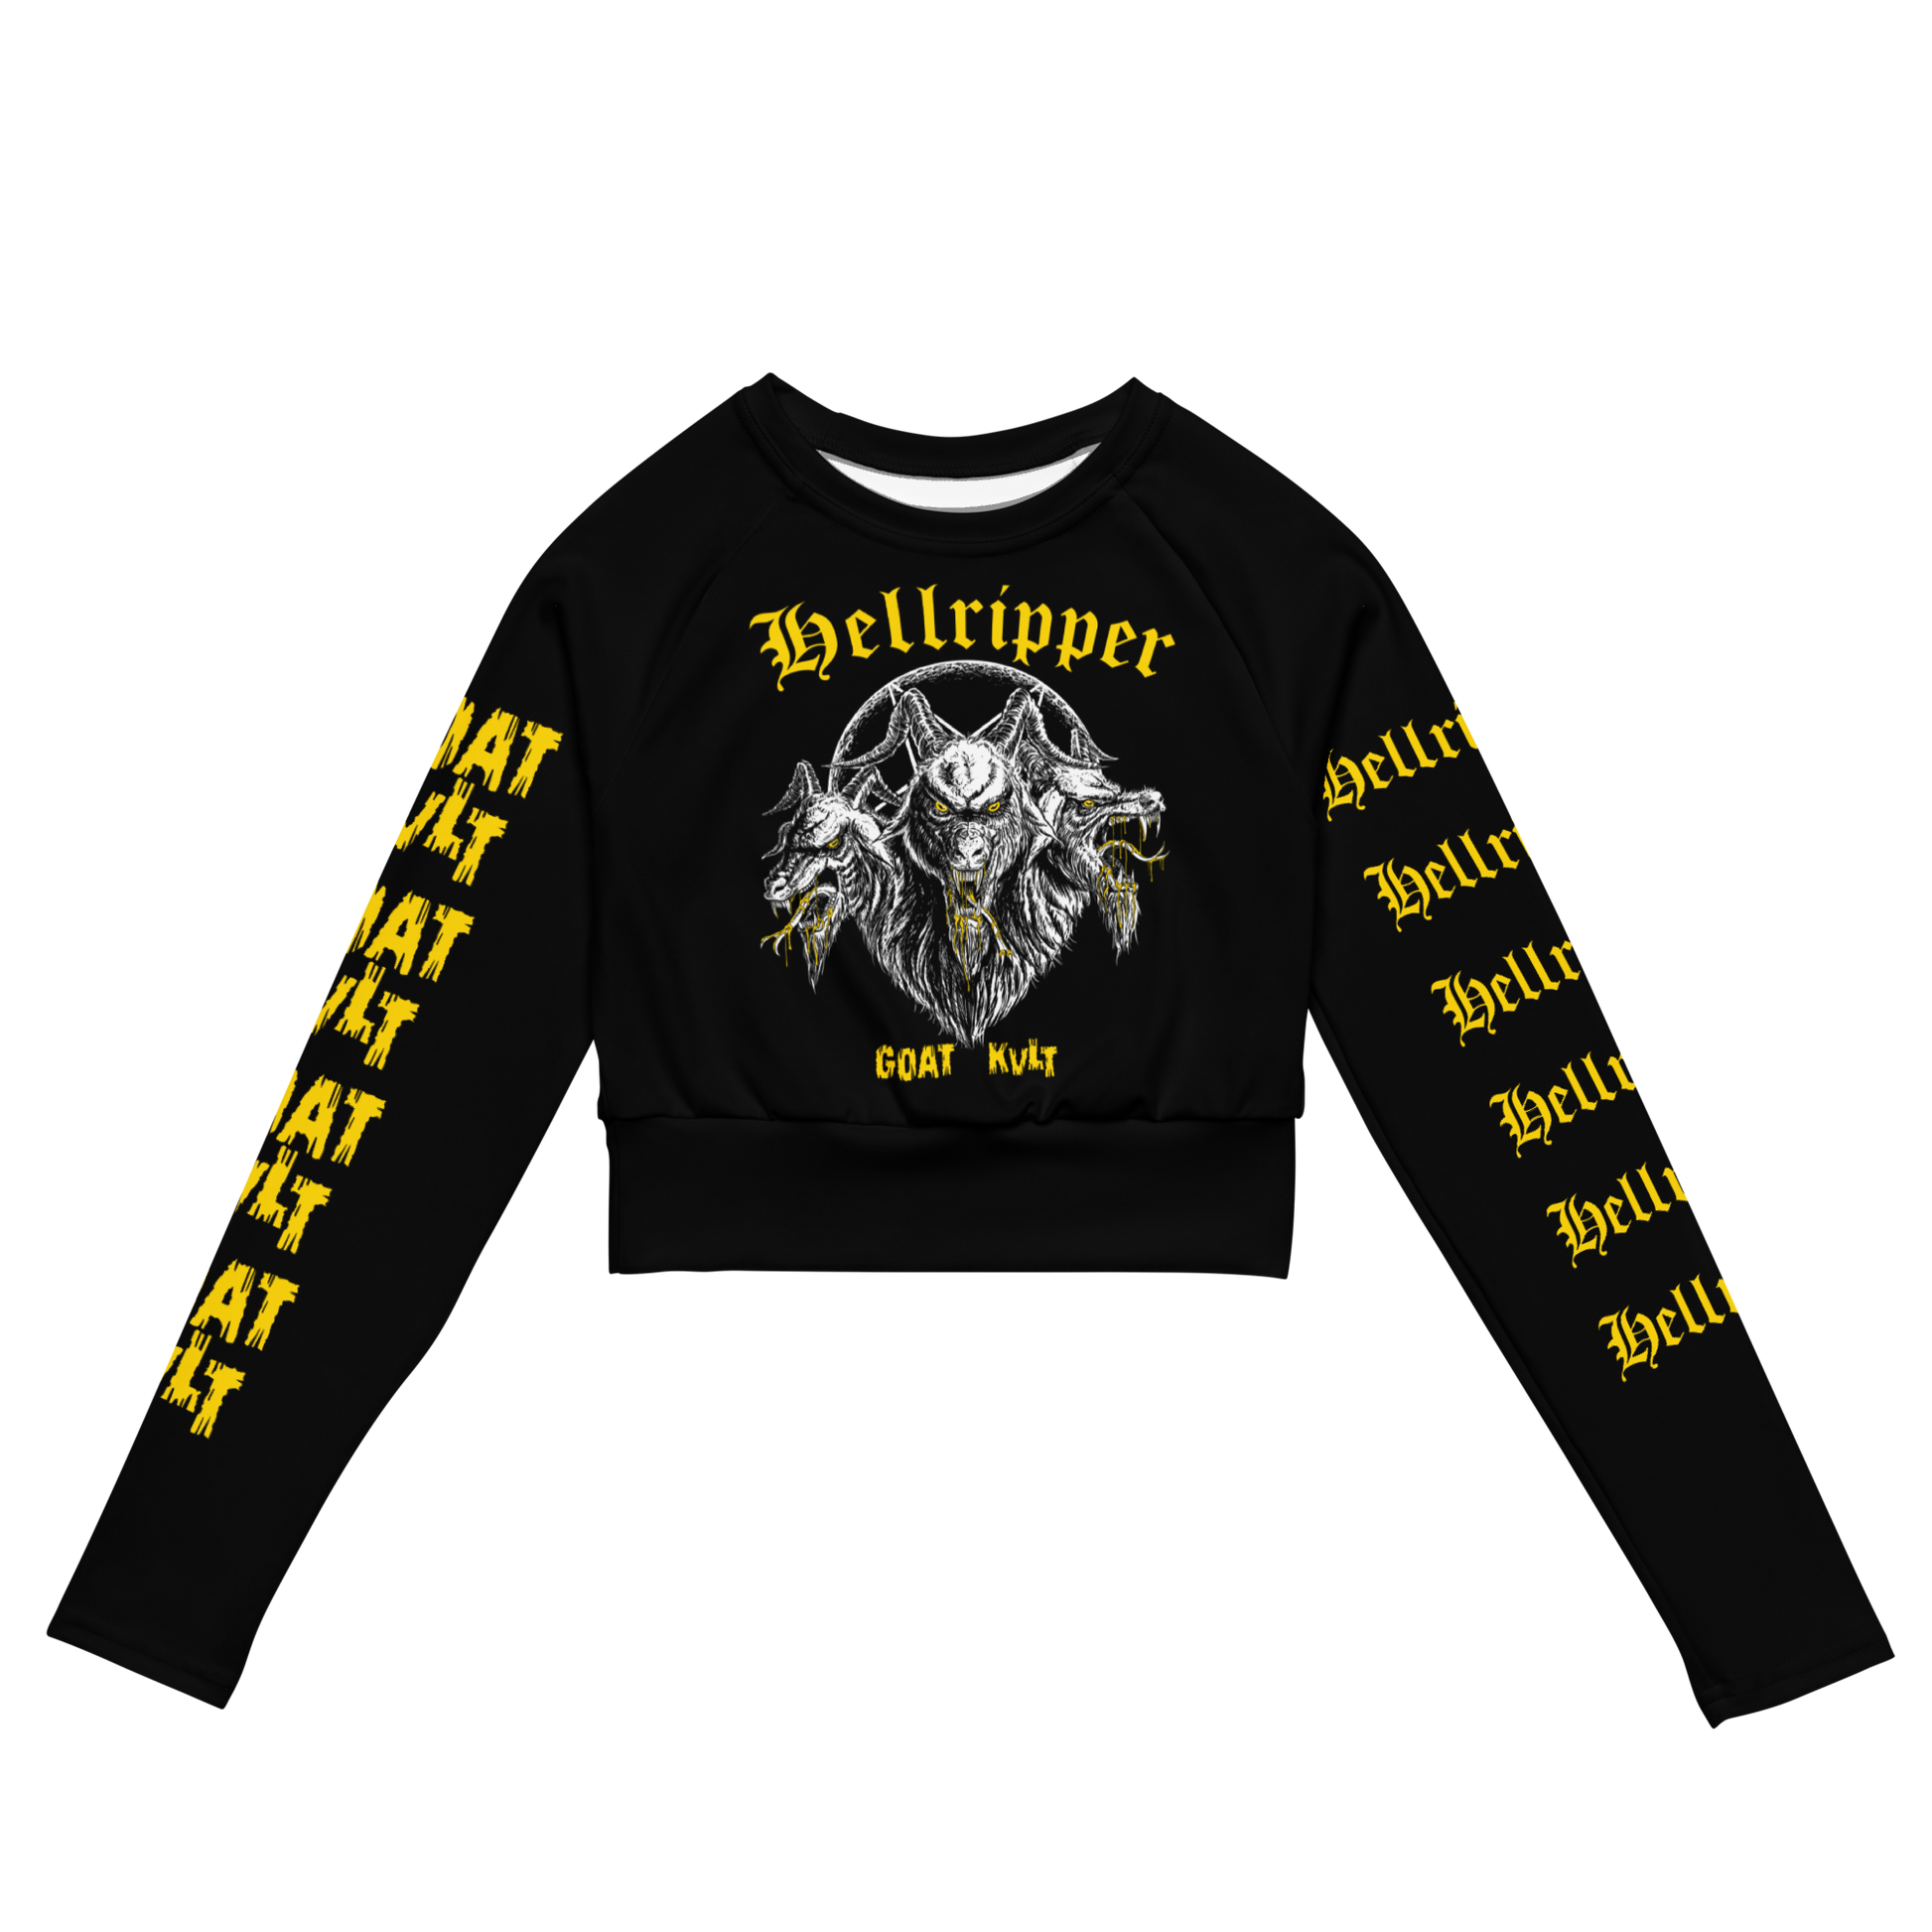 Hellripper - Goat Kvlt Official Long Sleeve Crop Top by Metal Mistress